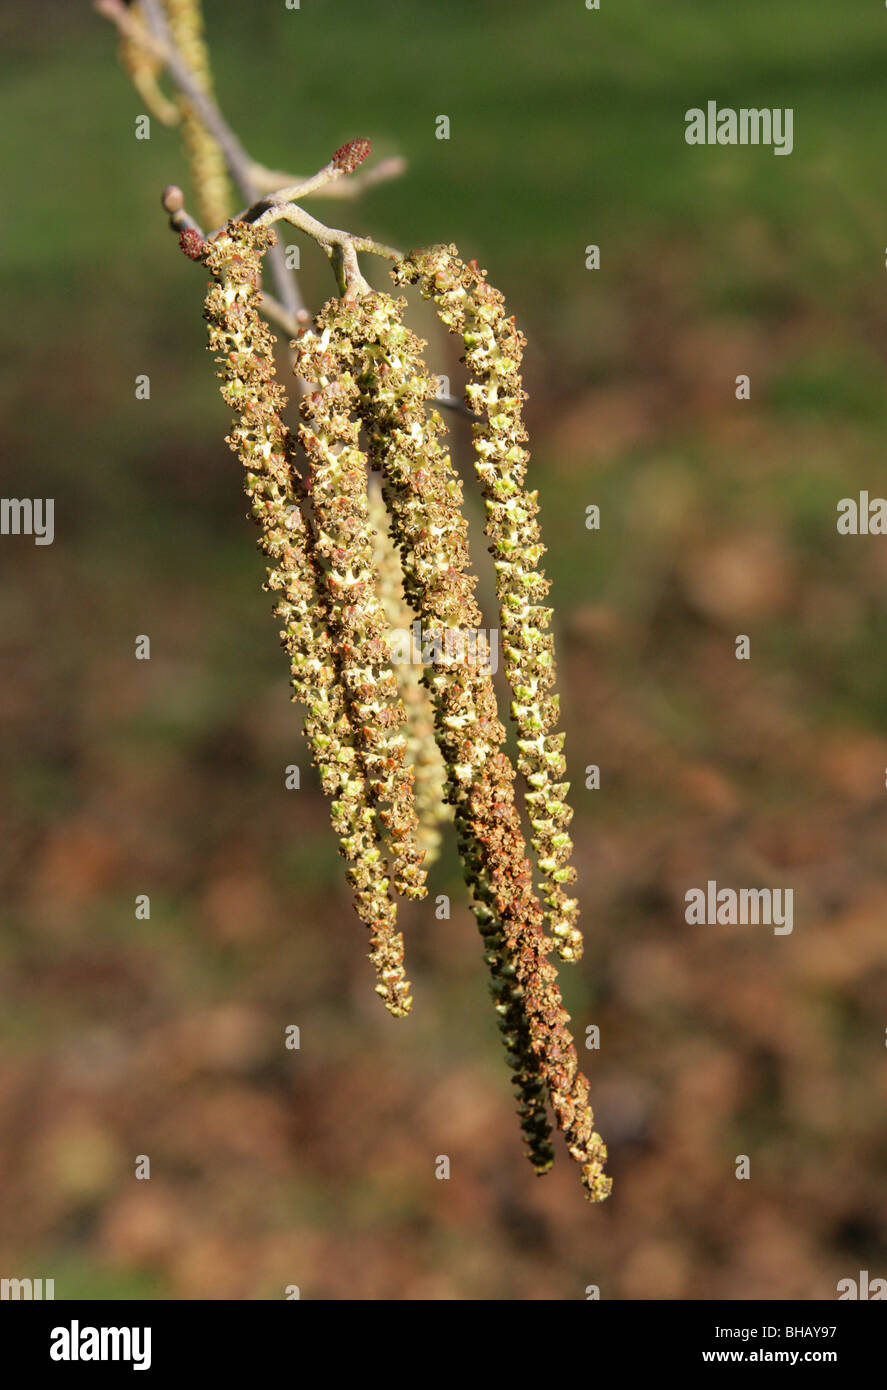 Caucasian Alder and Catkins, Alnus subcordata, Betulaceae, Caucasus, Iran Stock Photo